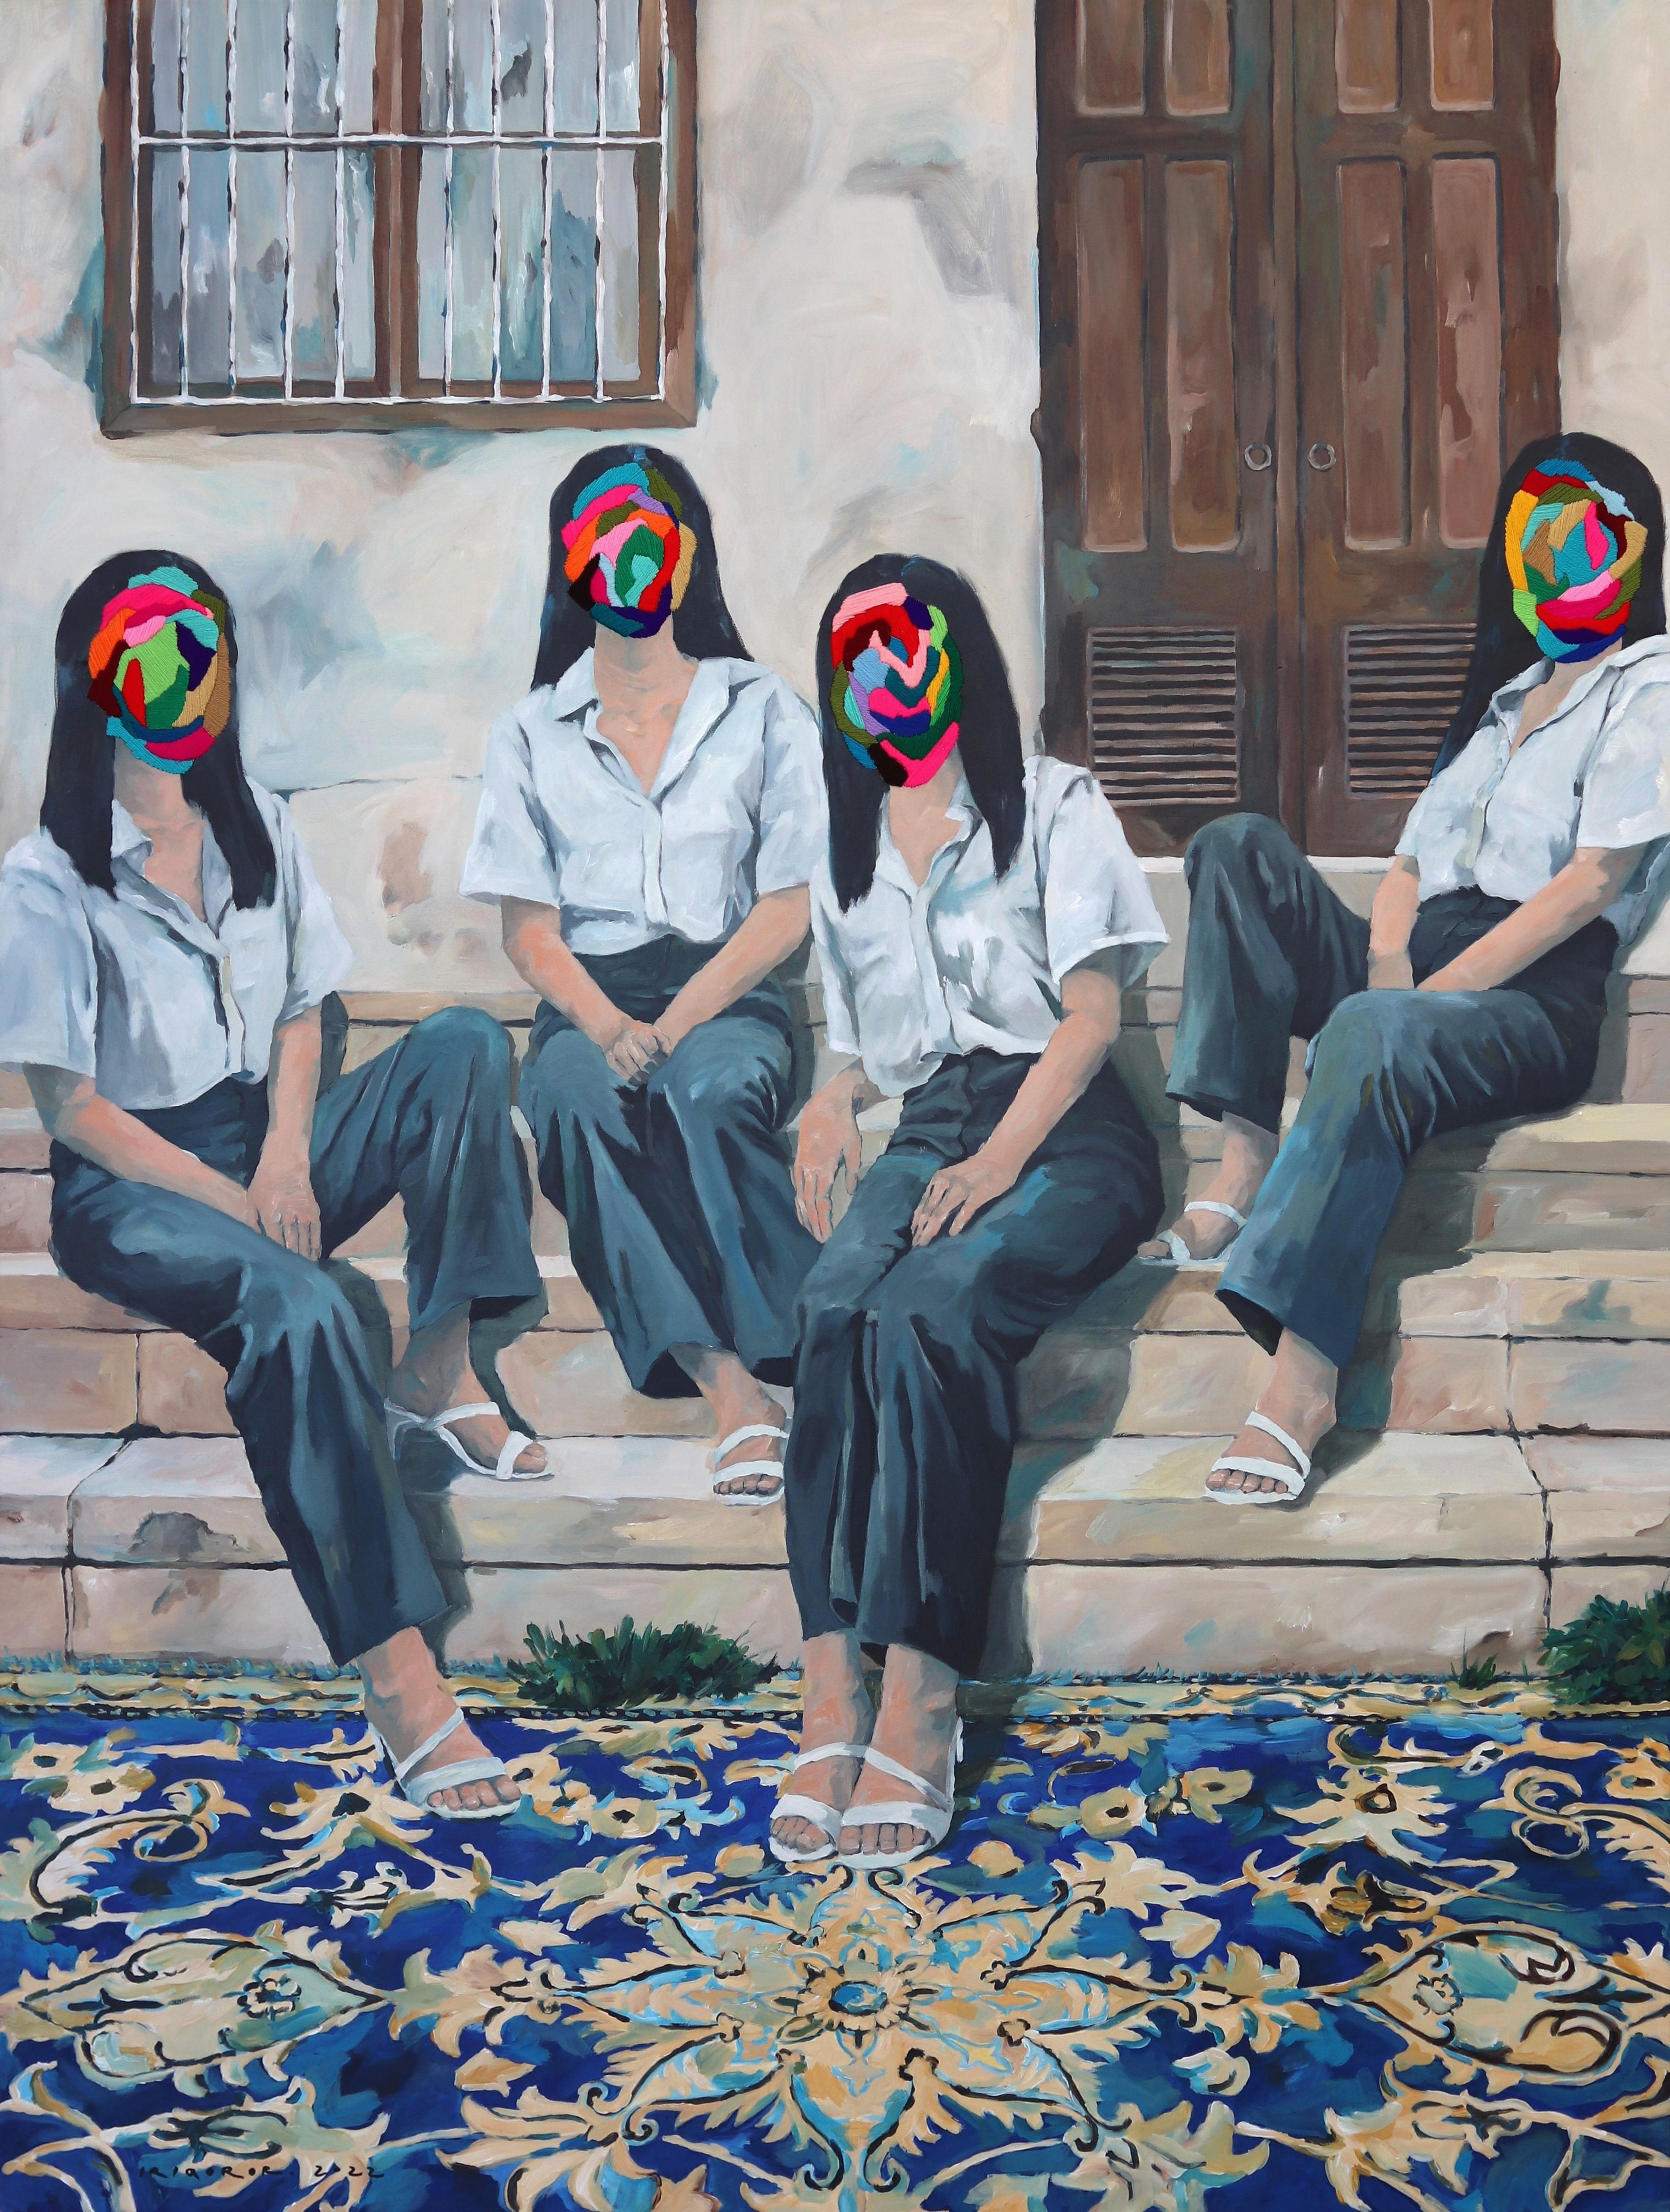 Quatre sœurs devant la maison - Surréalisme original - Texture d'art mixte